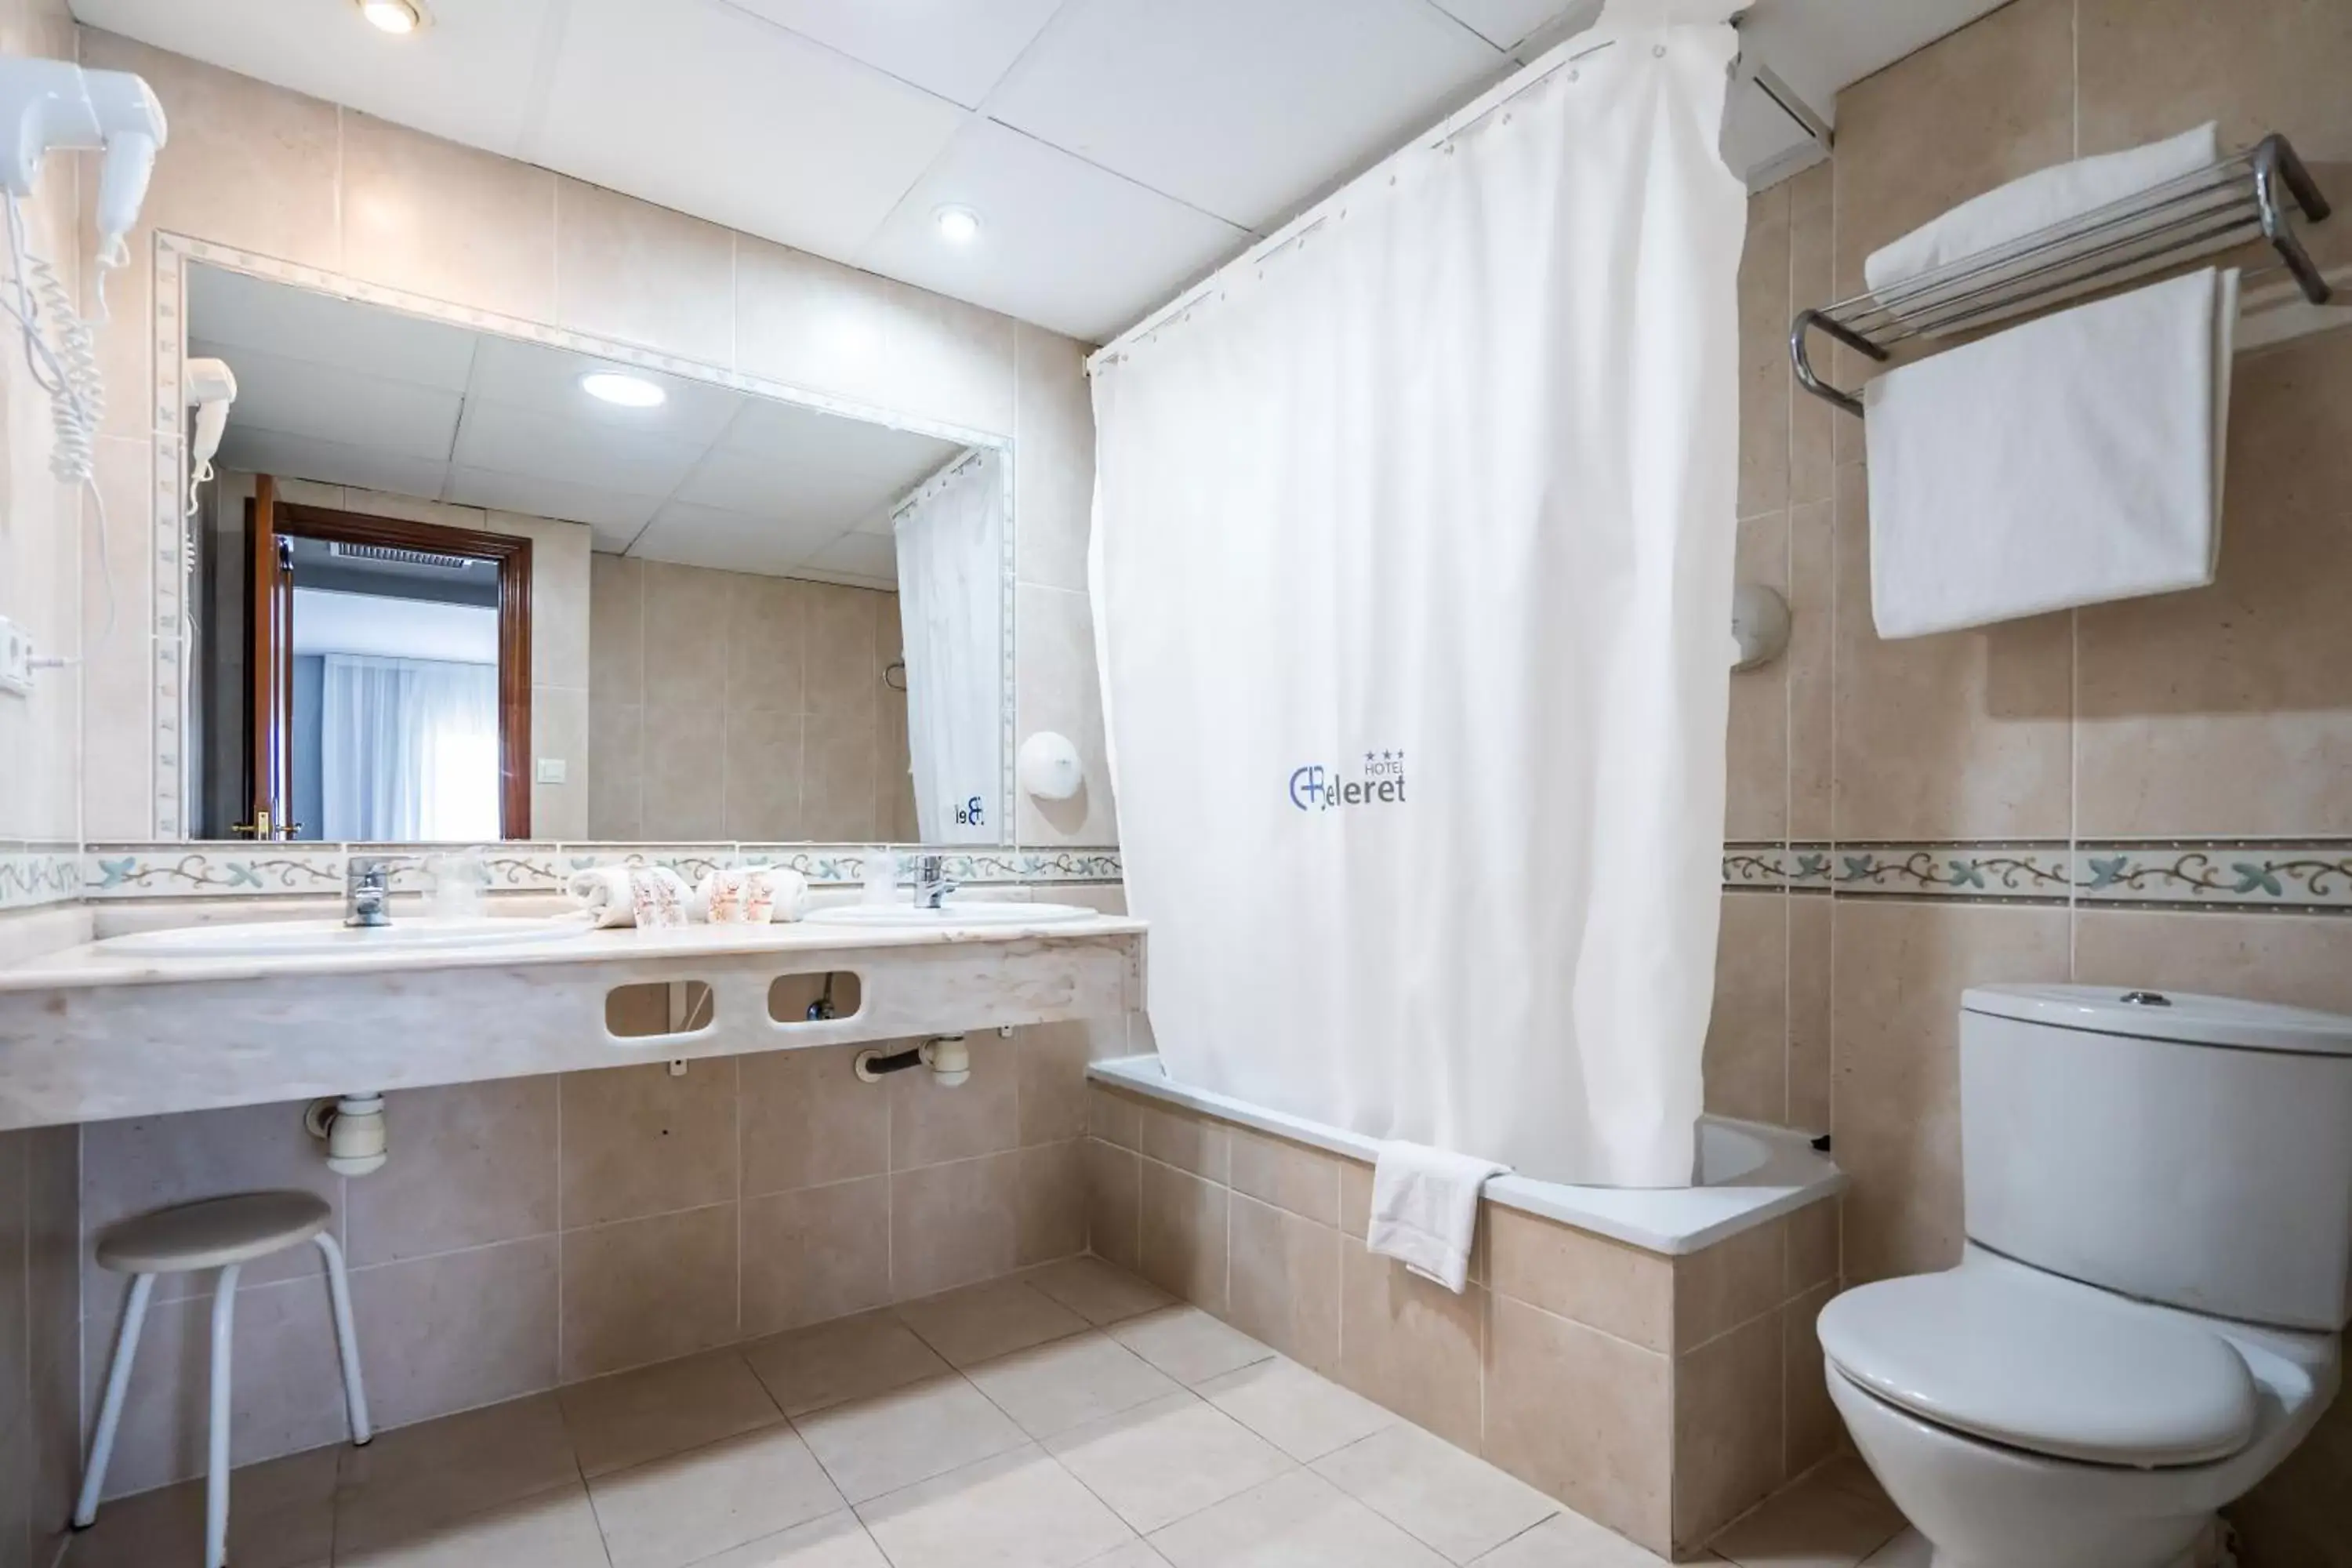 Toilet, Bathroom in Hotel Beleret